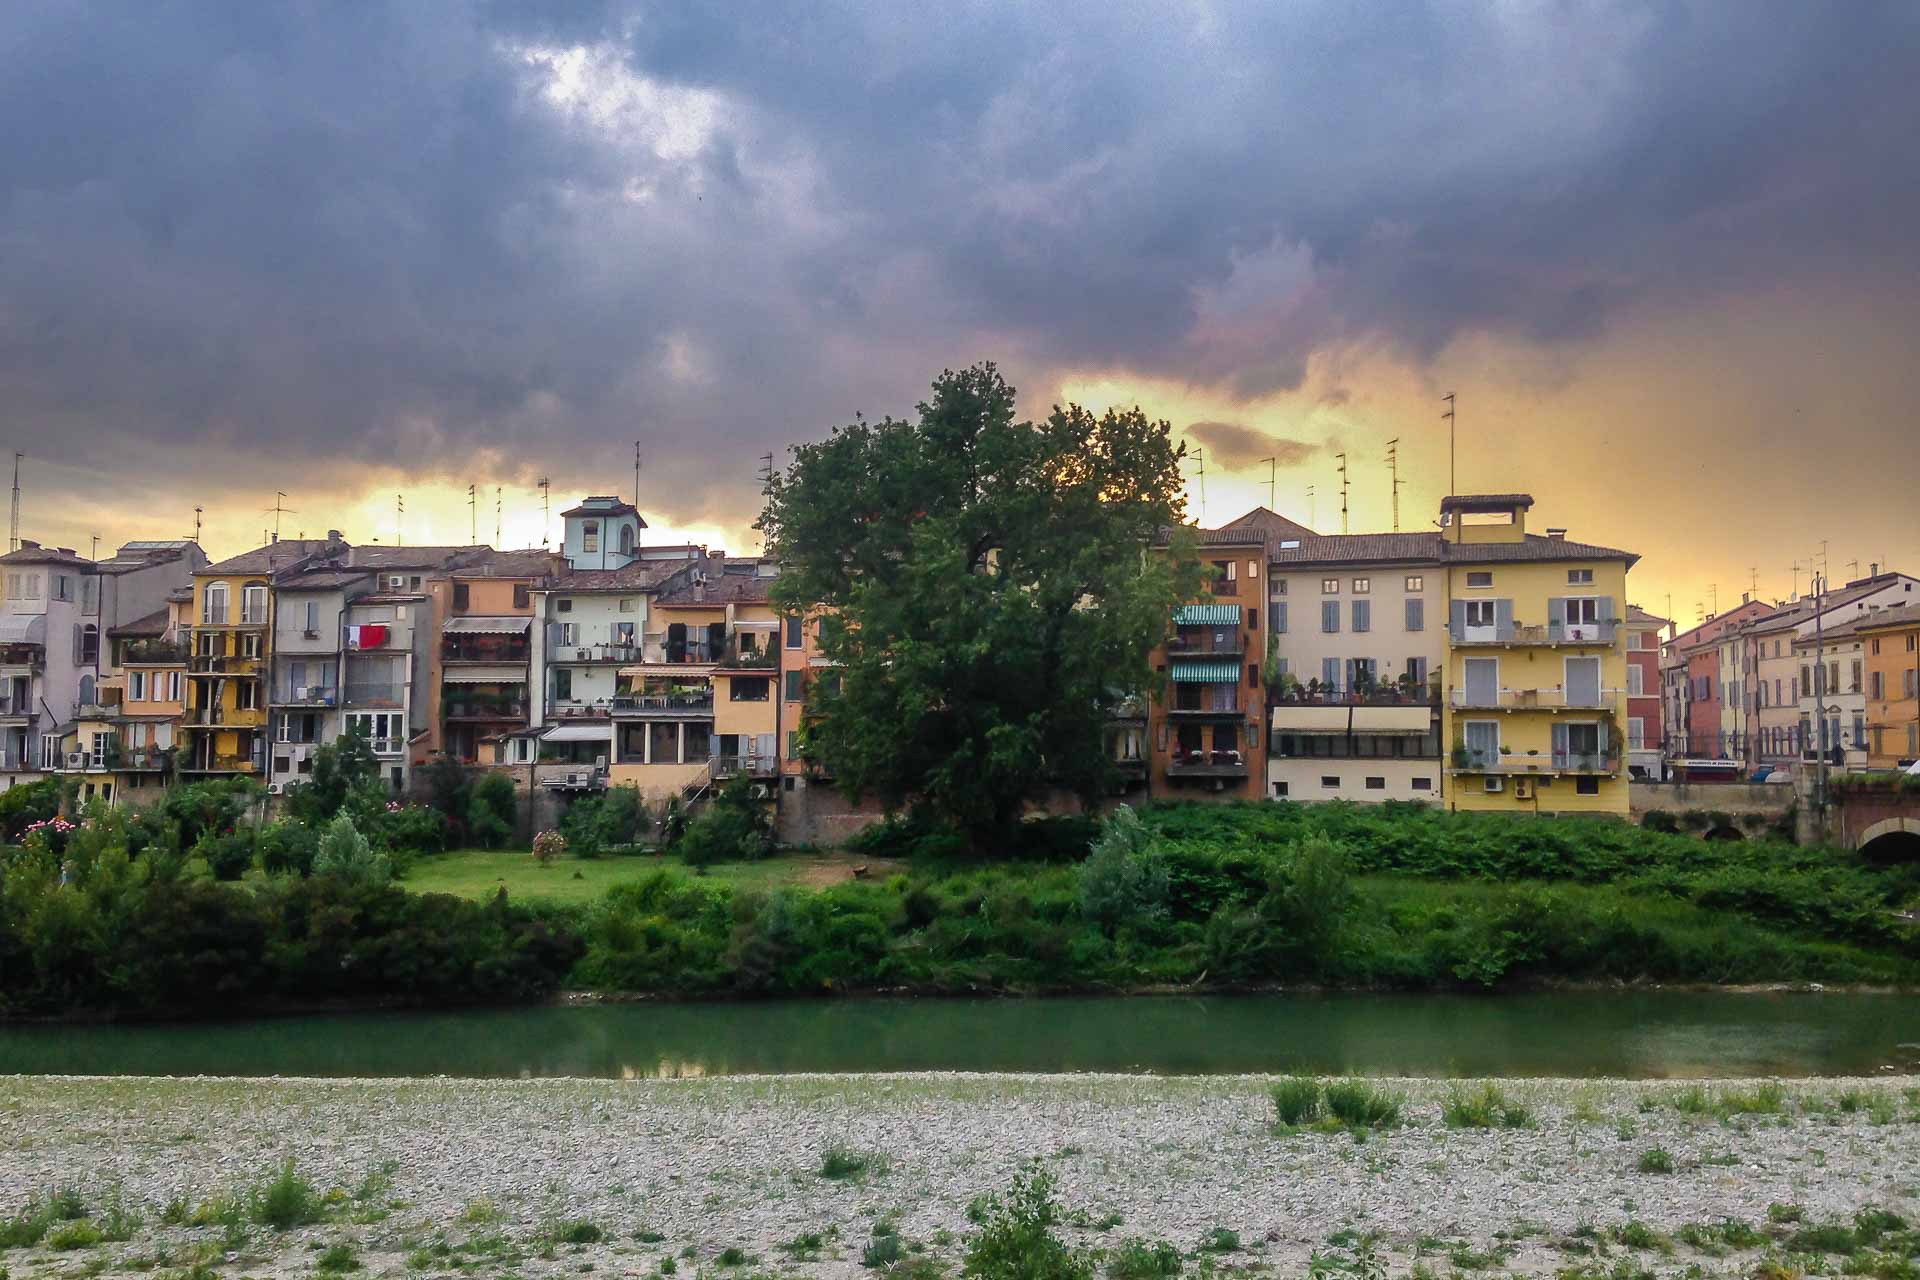 Vista das casas coloridas de Parma do outro lado do rio